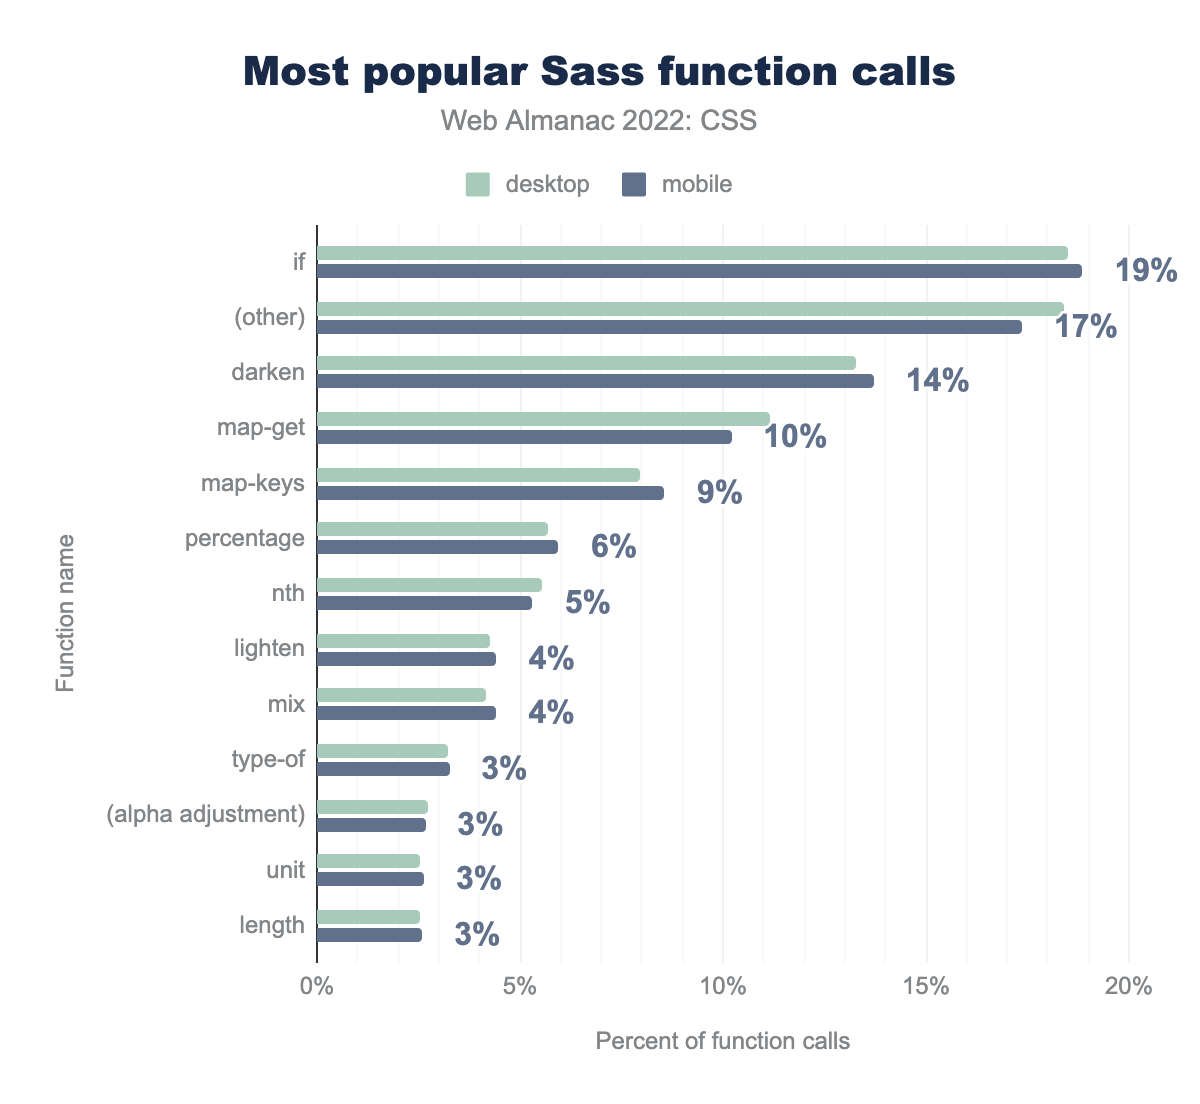 Le chiamate di funzioni Sass più popolari per percentuale di chiamate.